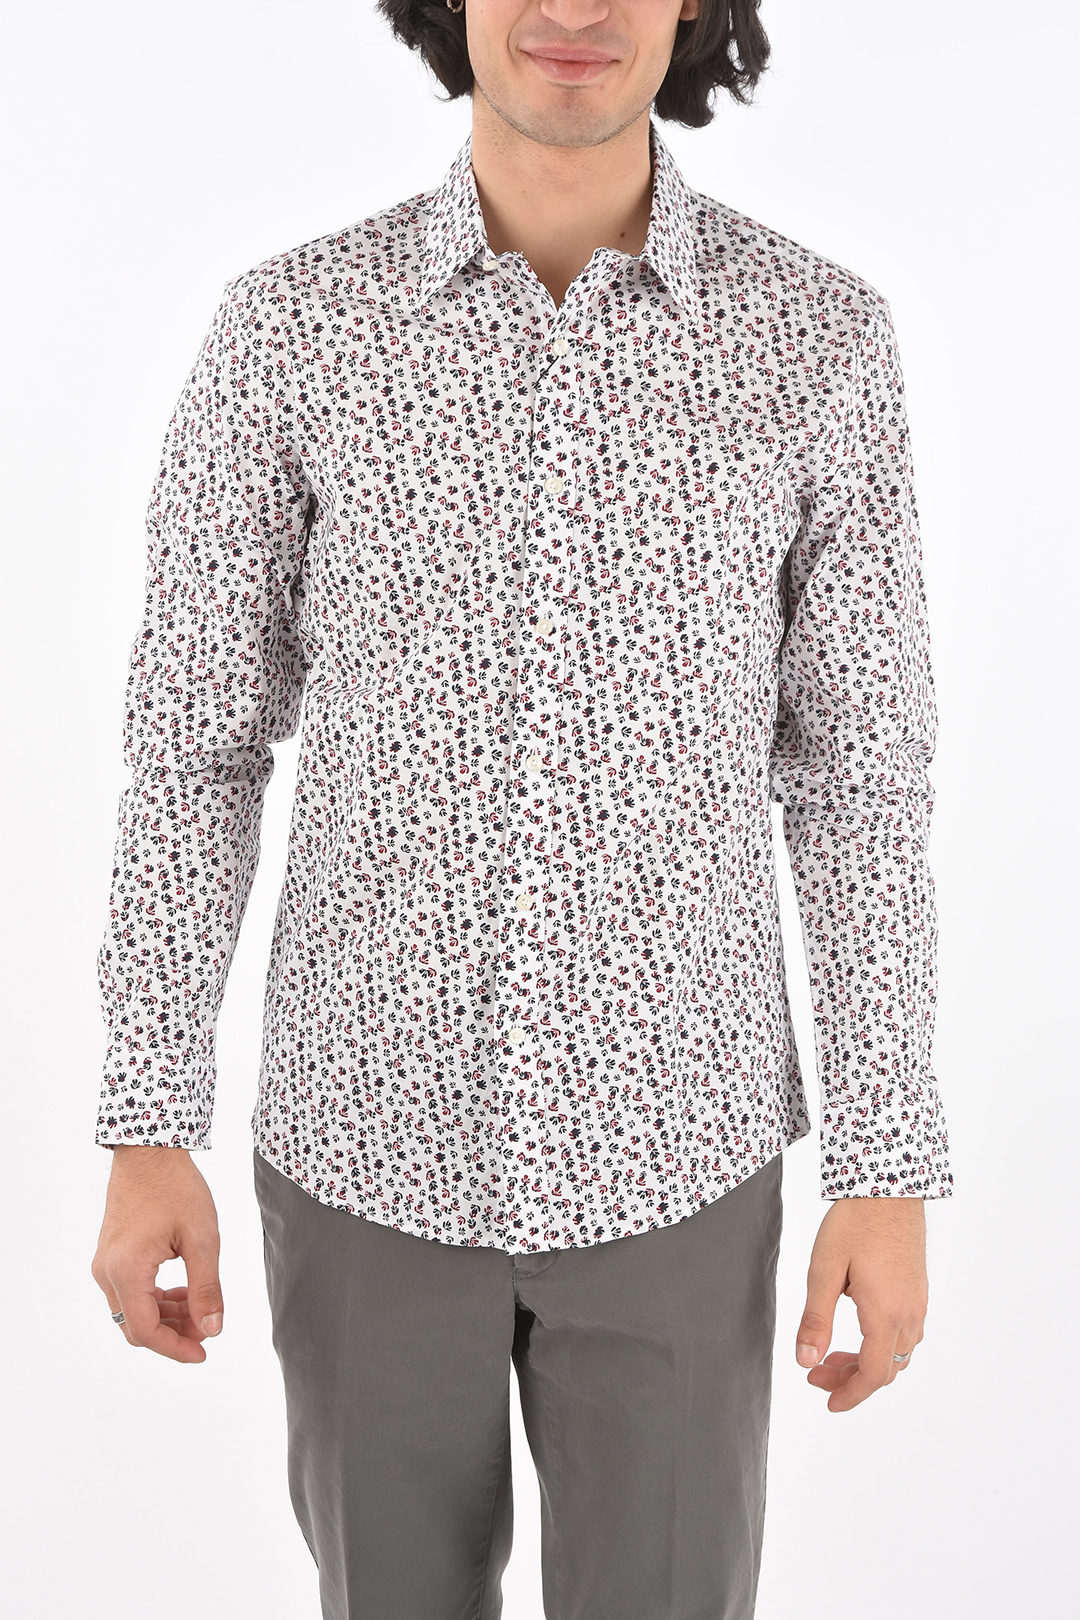 Michael Kors Floral Patterned SLIM FIT Stretch Cotton Shirt men - Glamood  Outlet